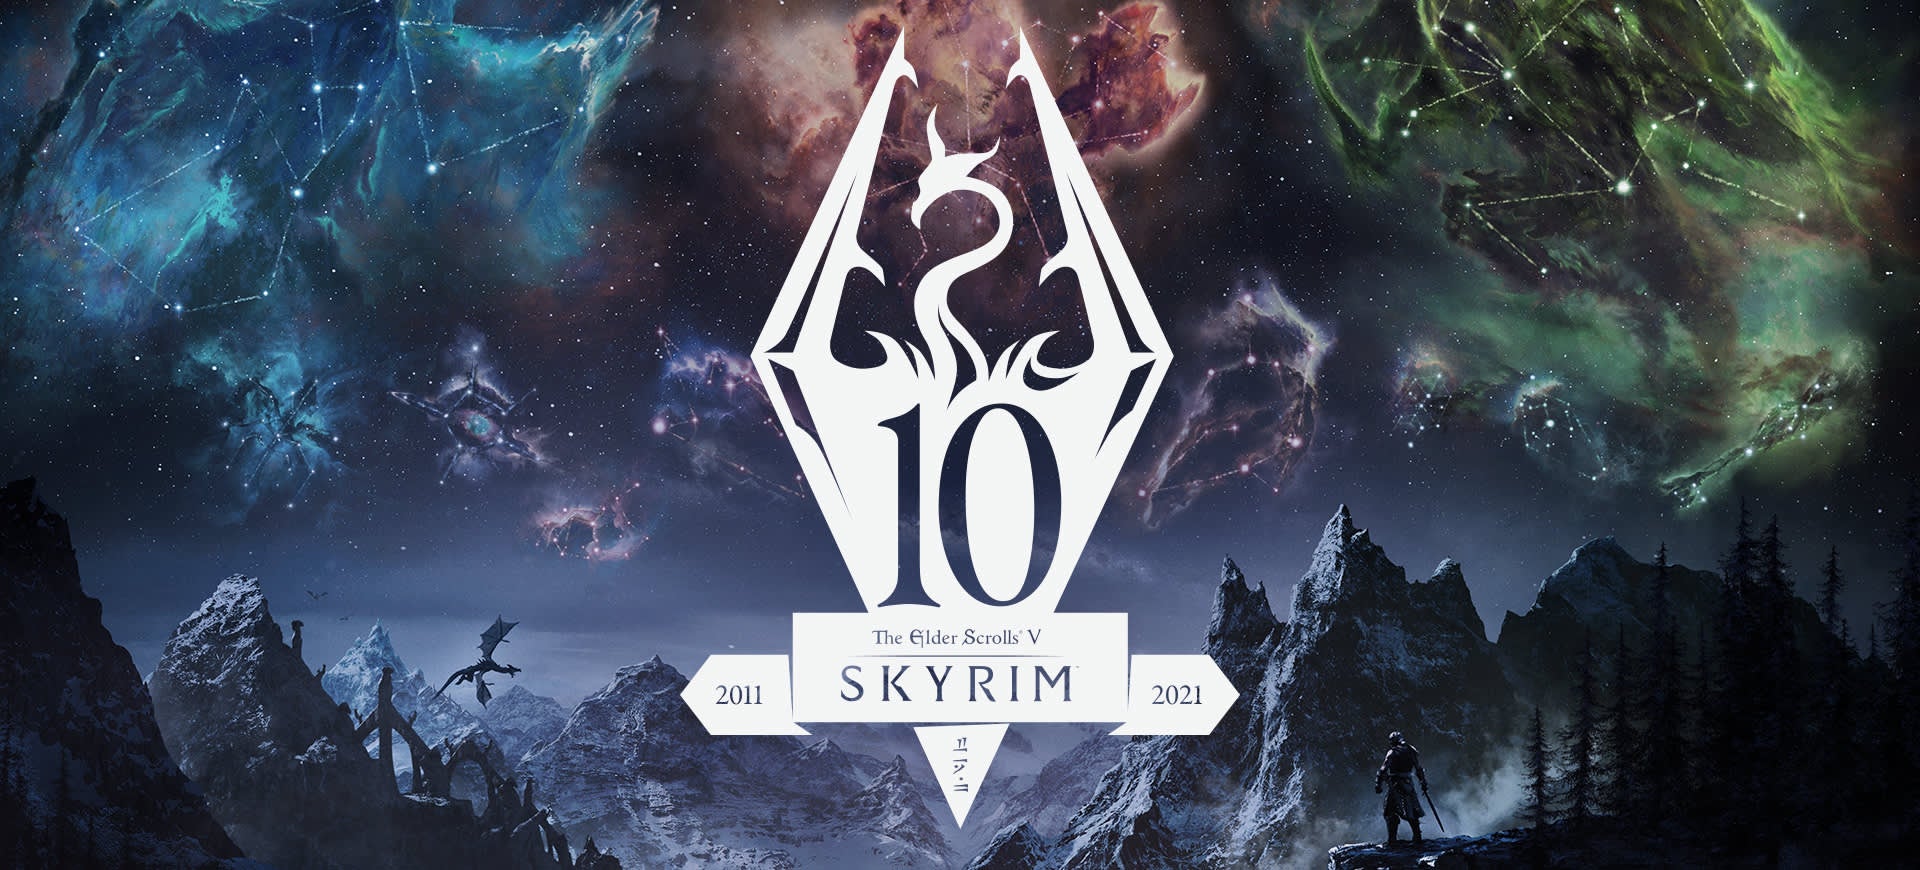 Obrazki dla Skyrim ukaże się w jeszcze jednej wersji - tym razem Anniversary Edition